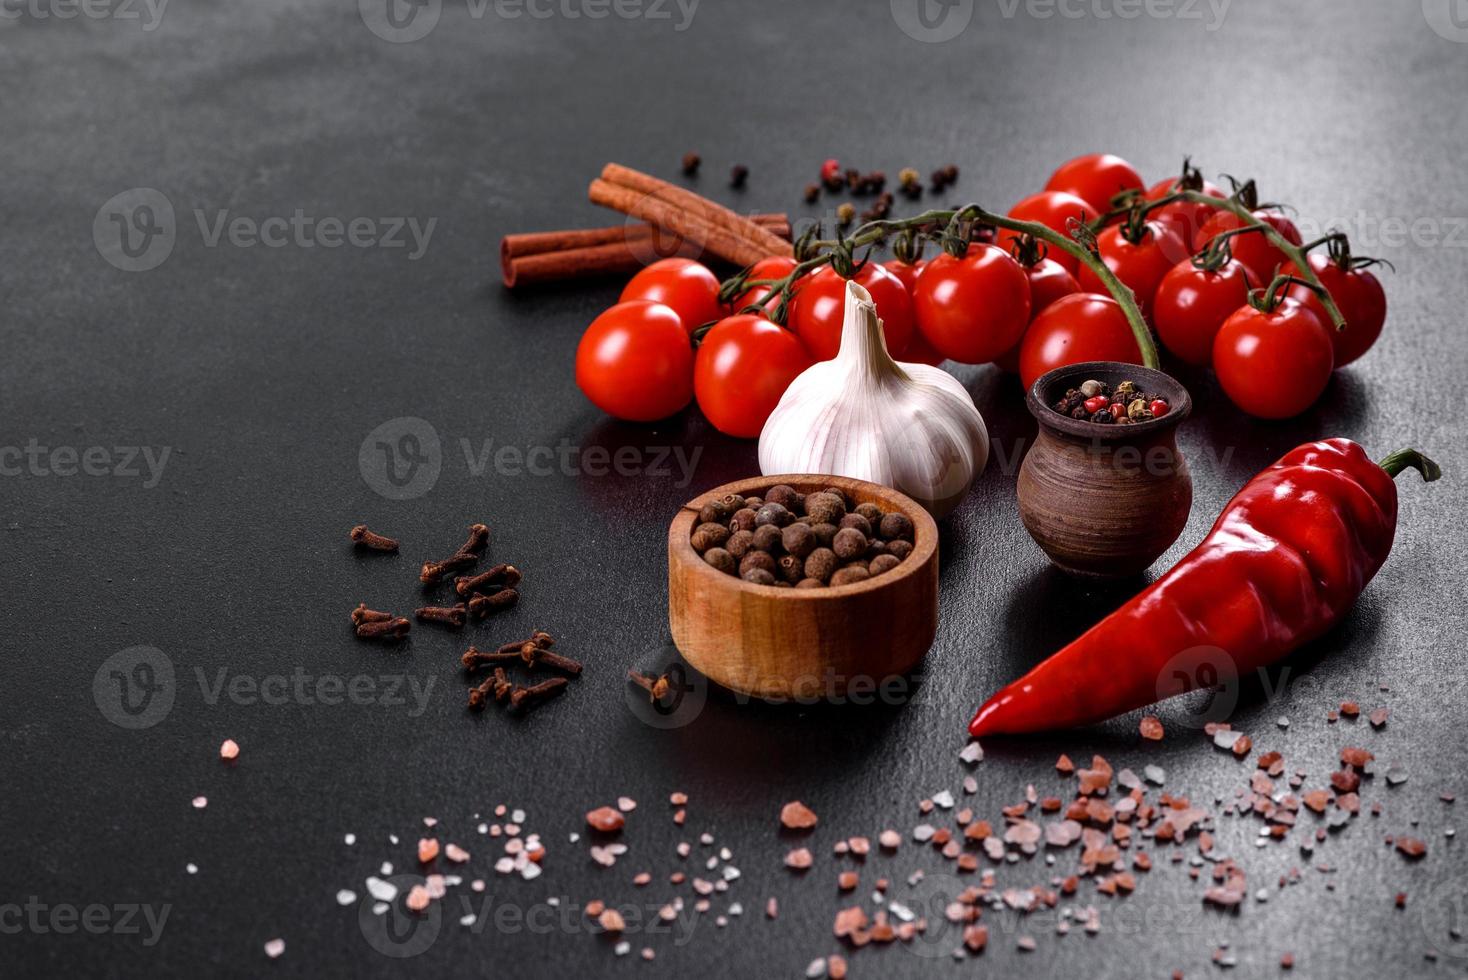 ingrediënten om te koken, specerijen, knoflook, tomaten en kruiden foto